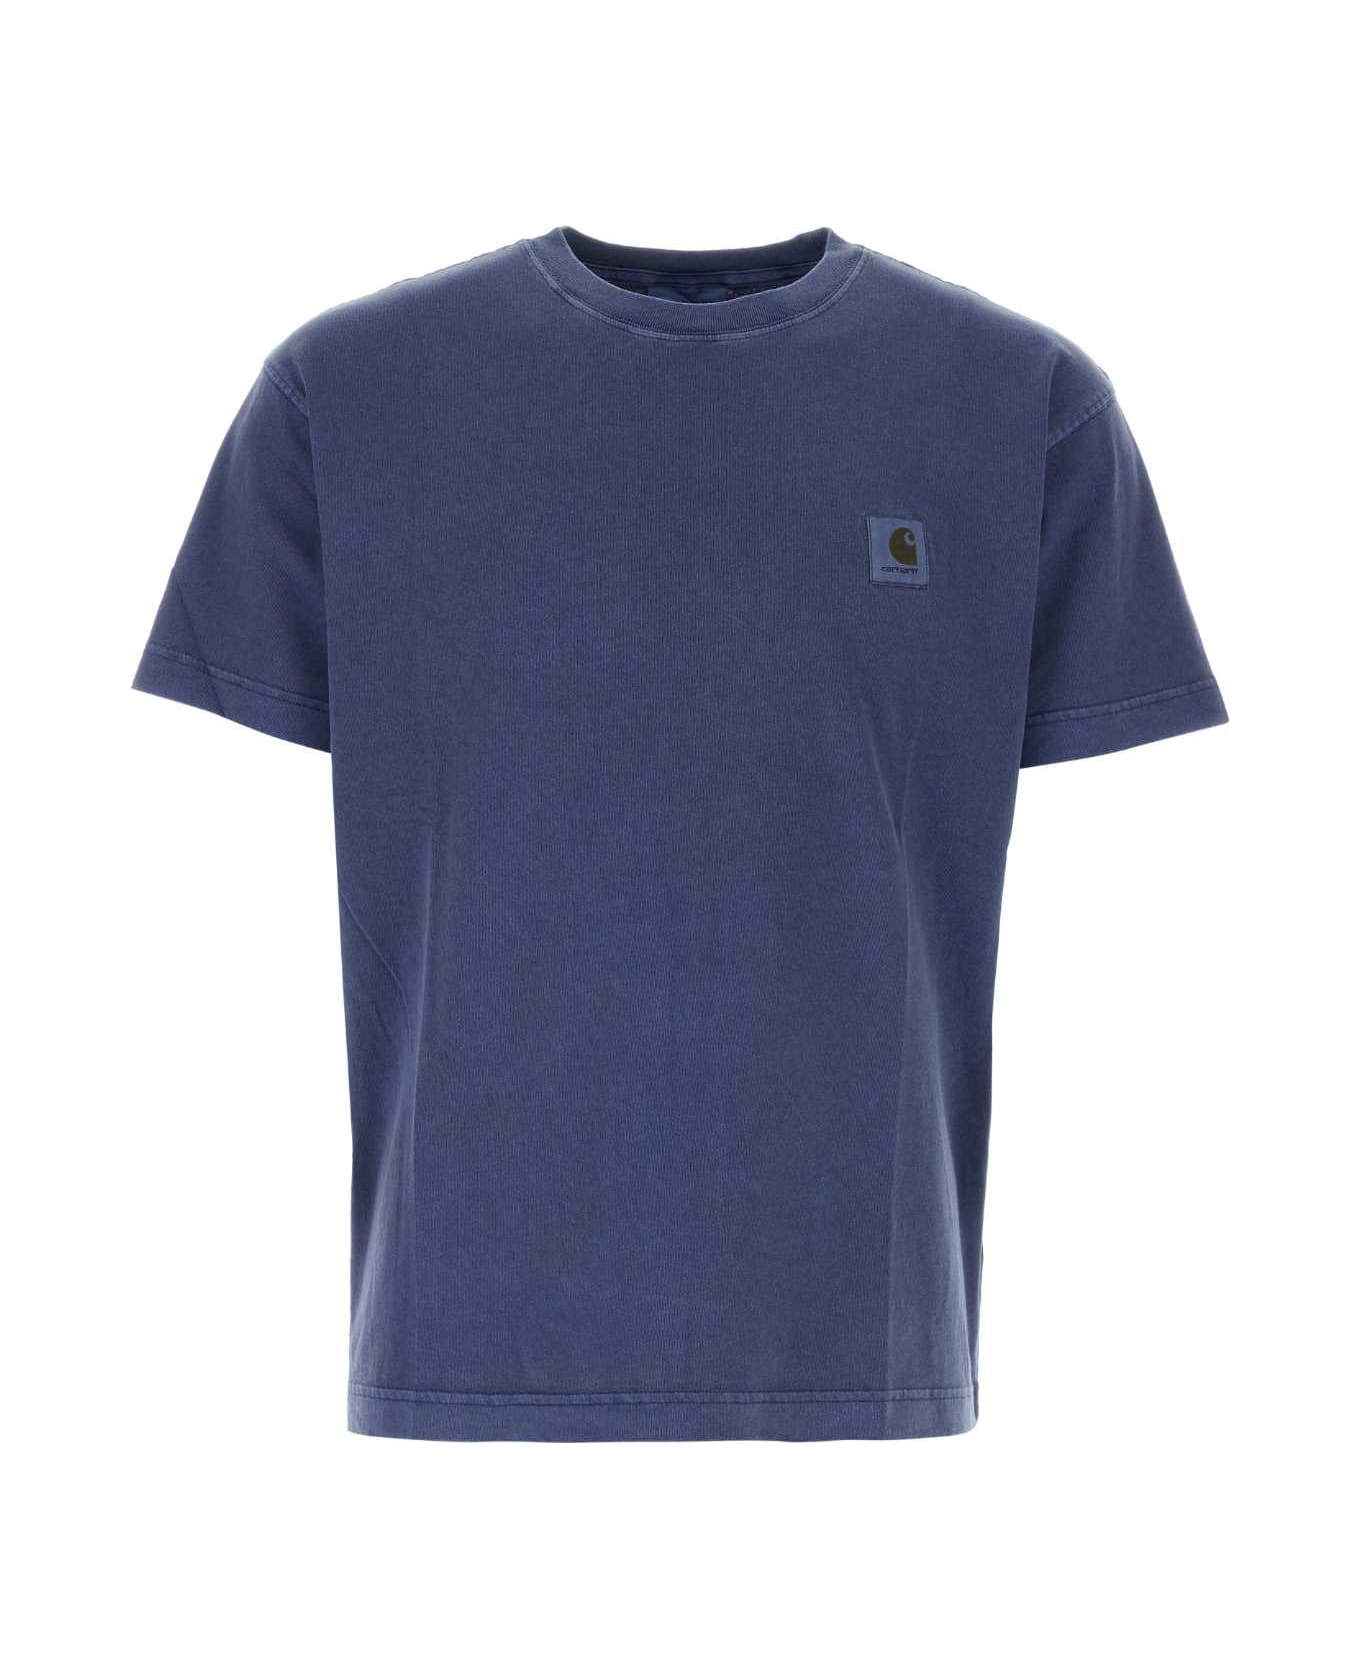 Carhartt Air Force Blue Cotton Oversize S/s Nelson T-shirt - ELDER シャツ